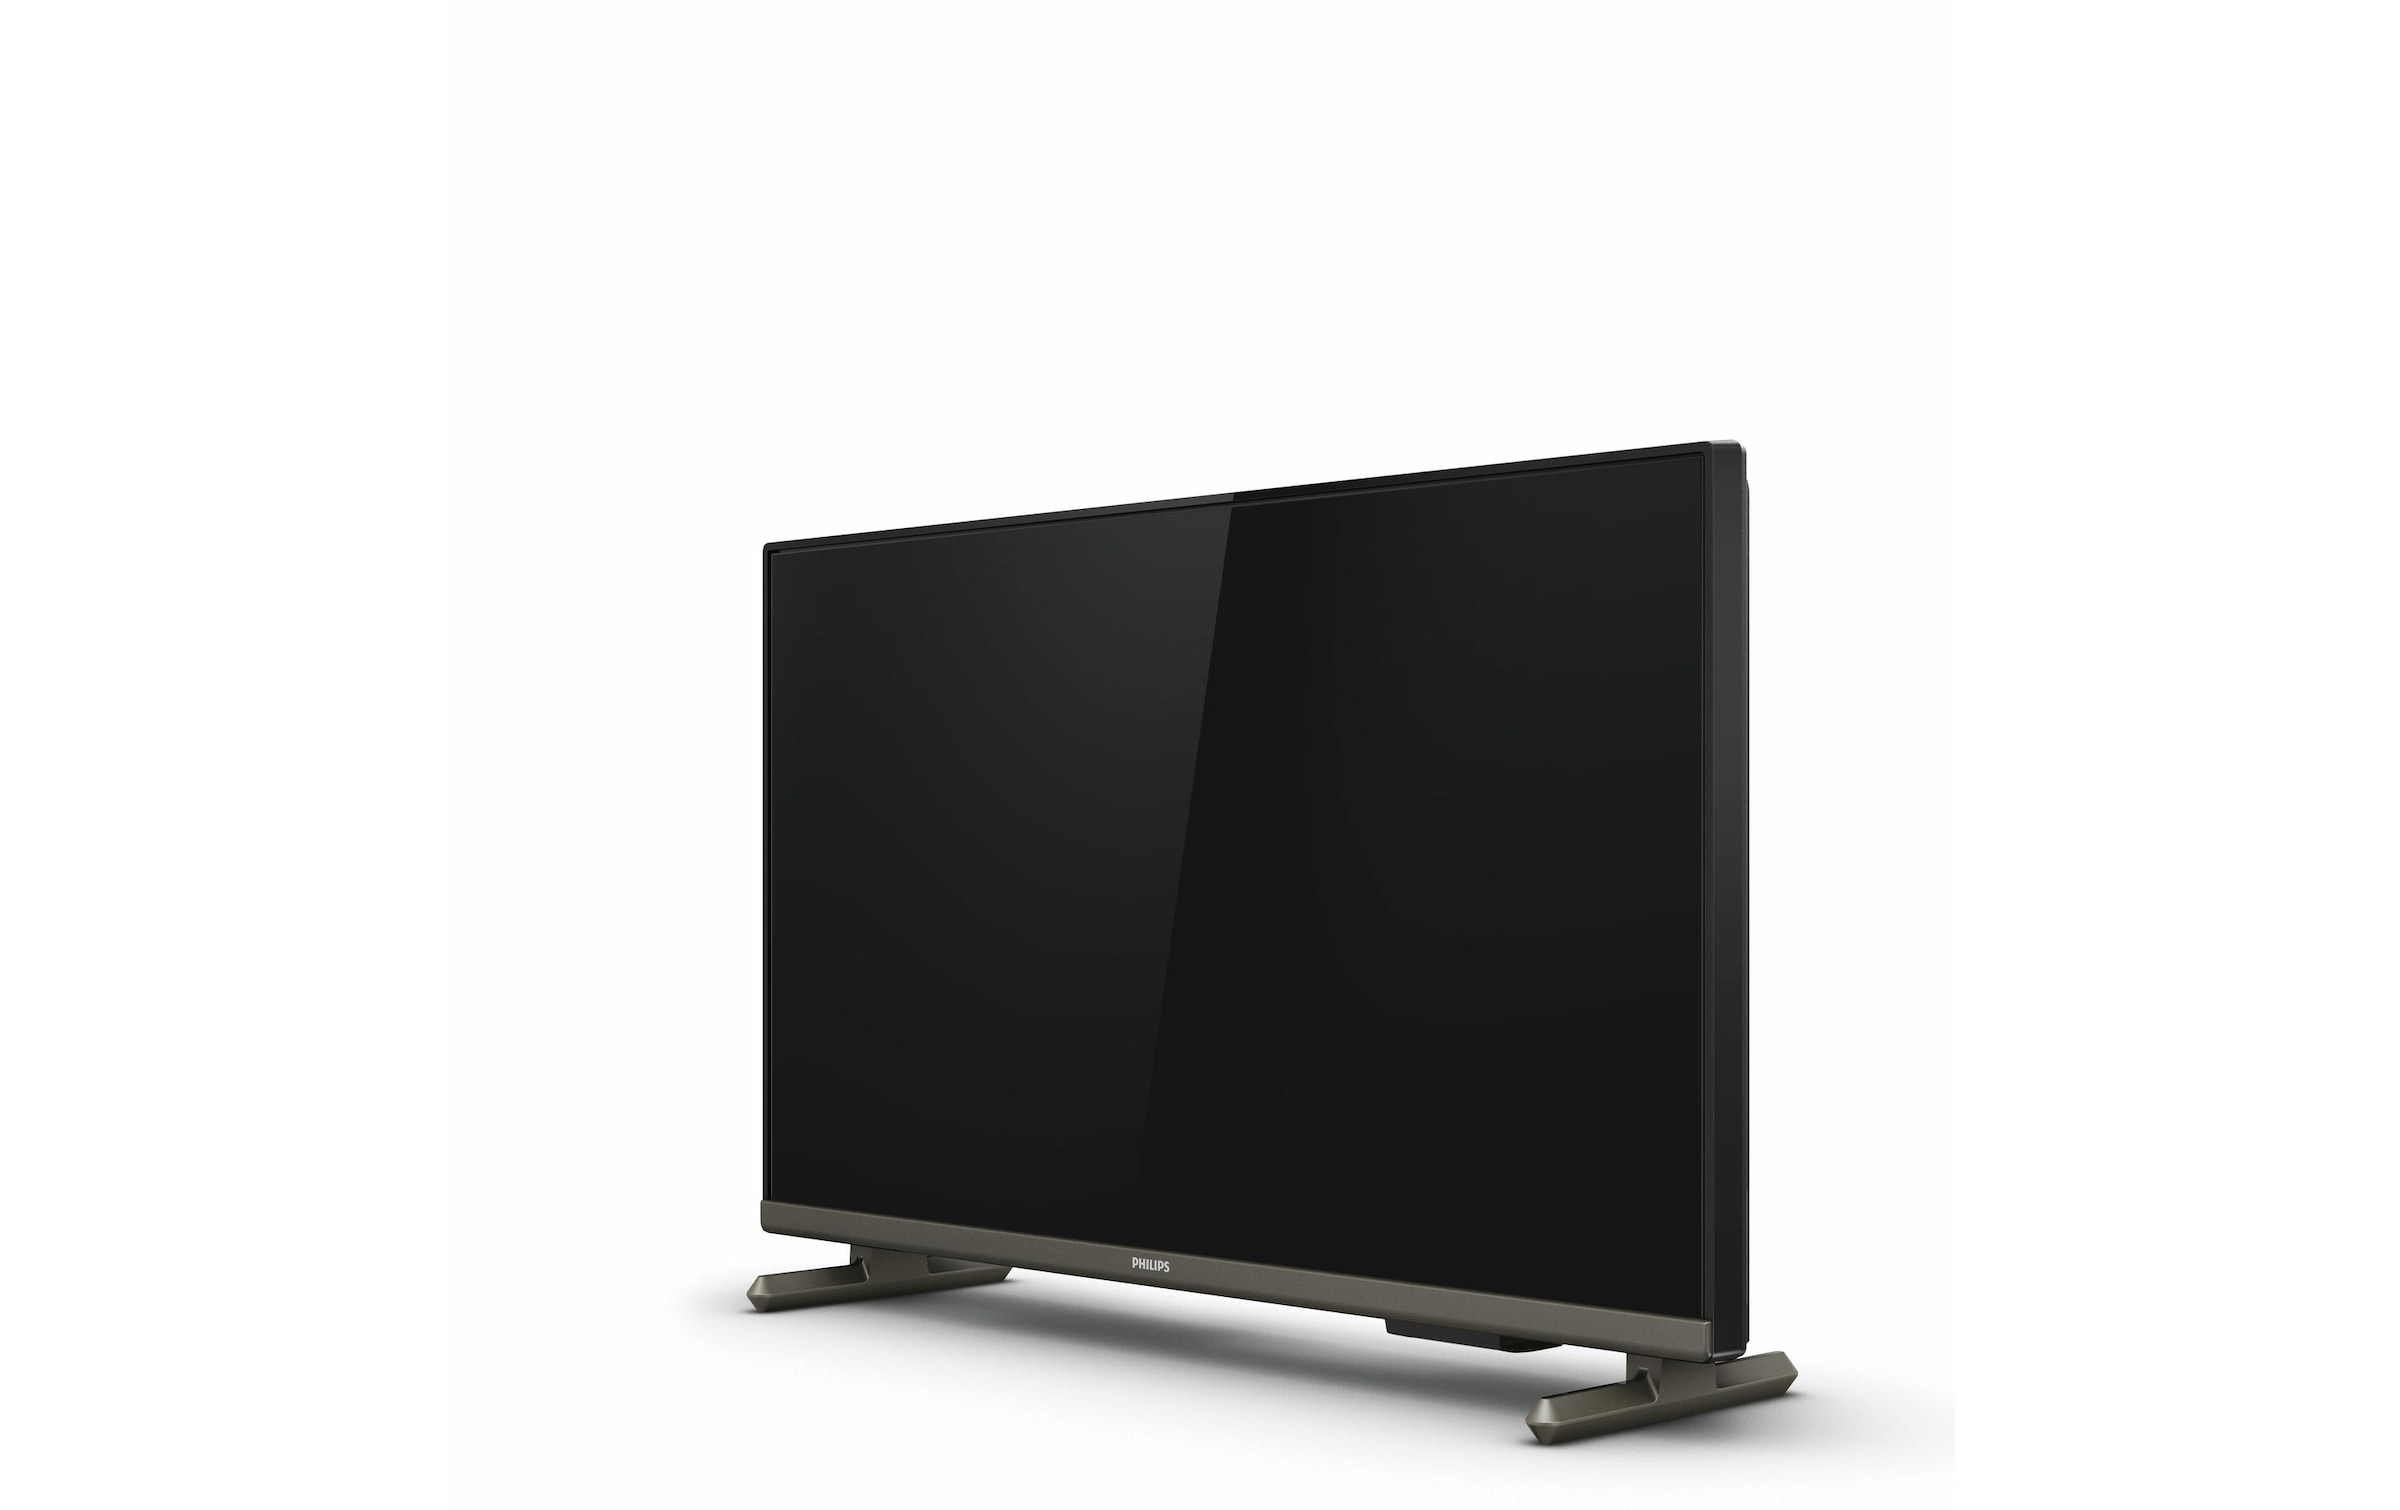 Philips LED-Fernseher »24PHS6808/12 24«, 60,72 cm/24 Zoll